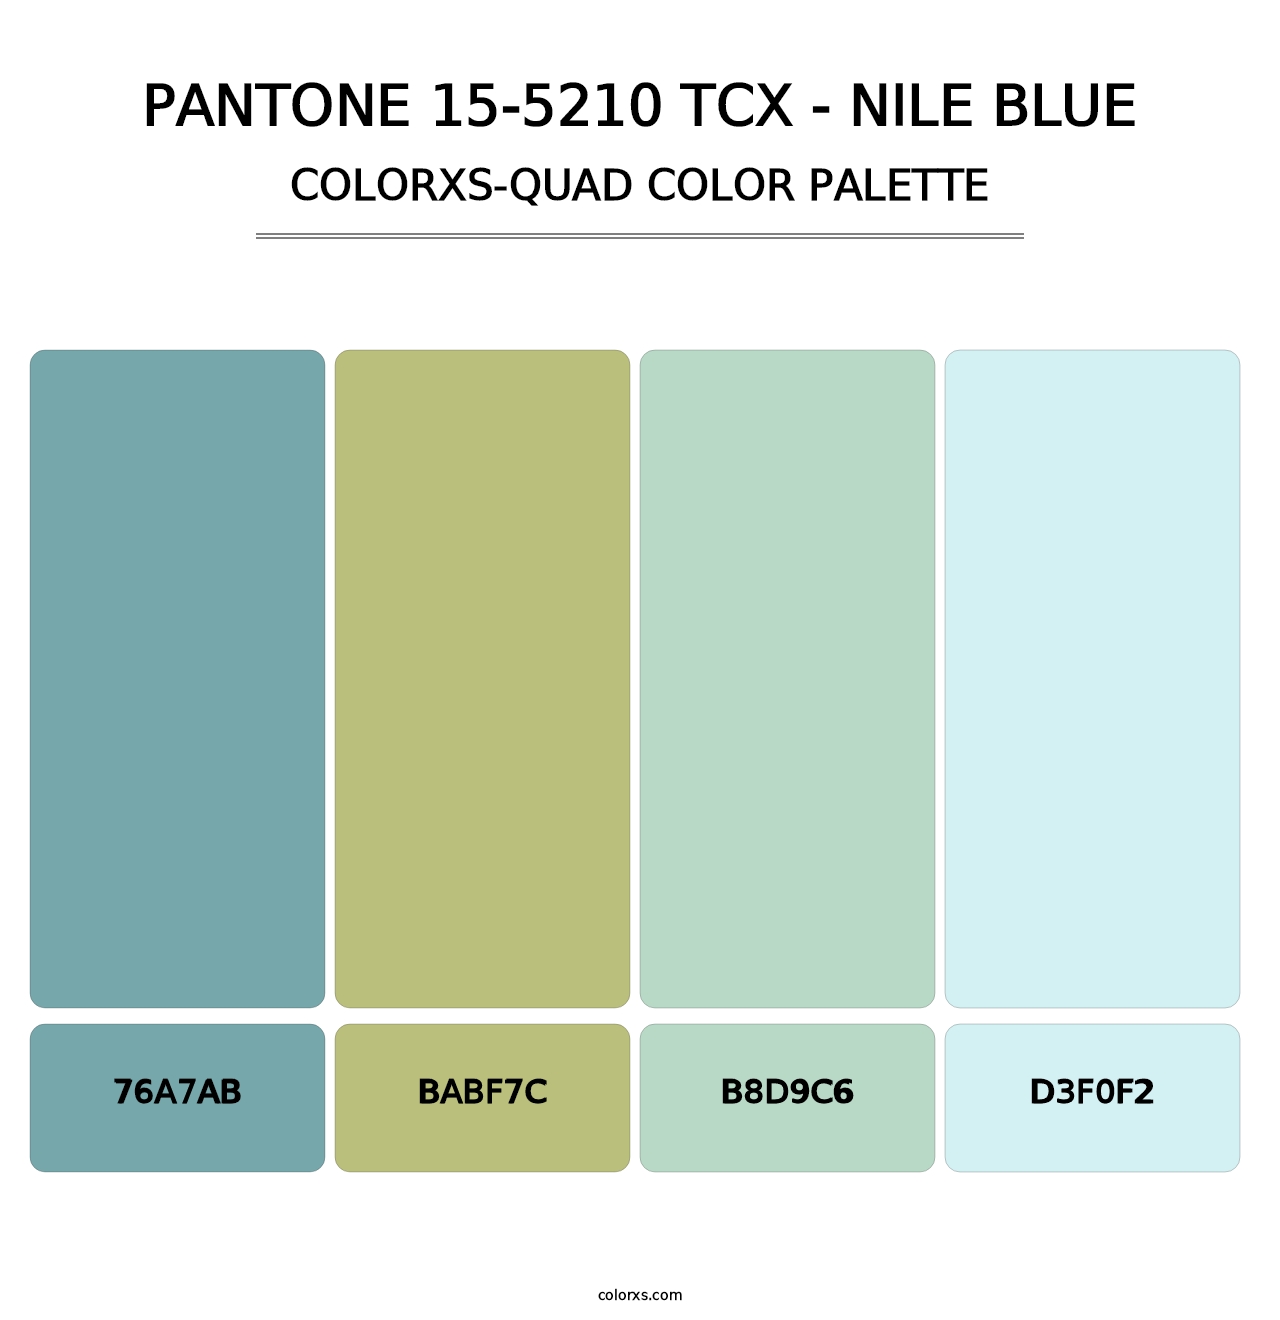 PANTONE 15-5210 TCX - Nile Blue - Colorxs Quad Palette